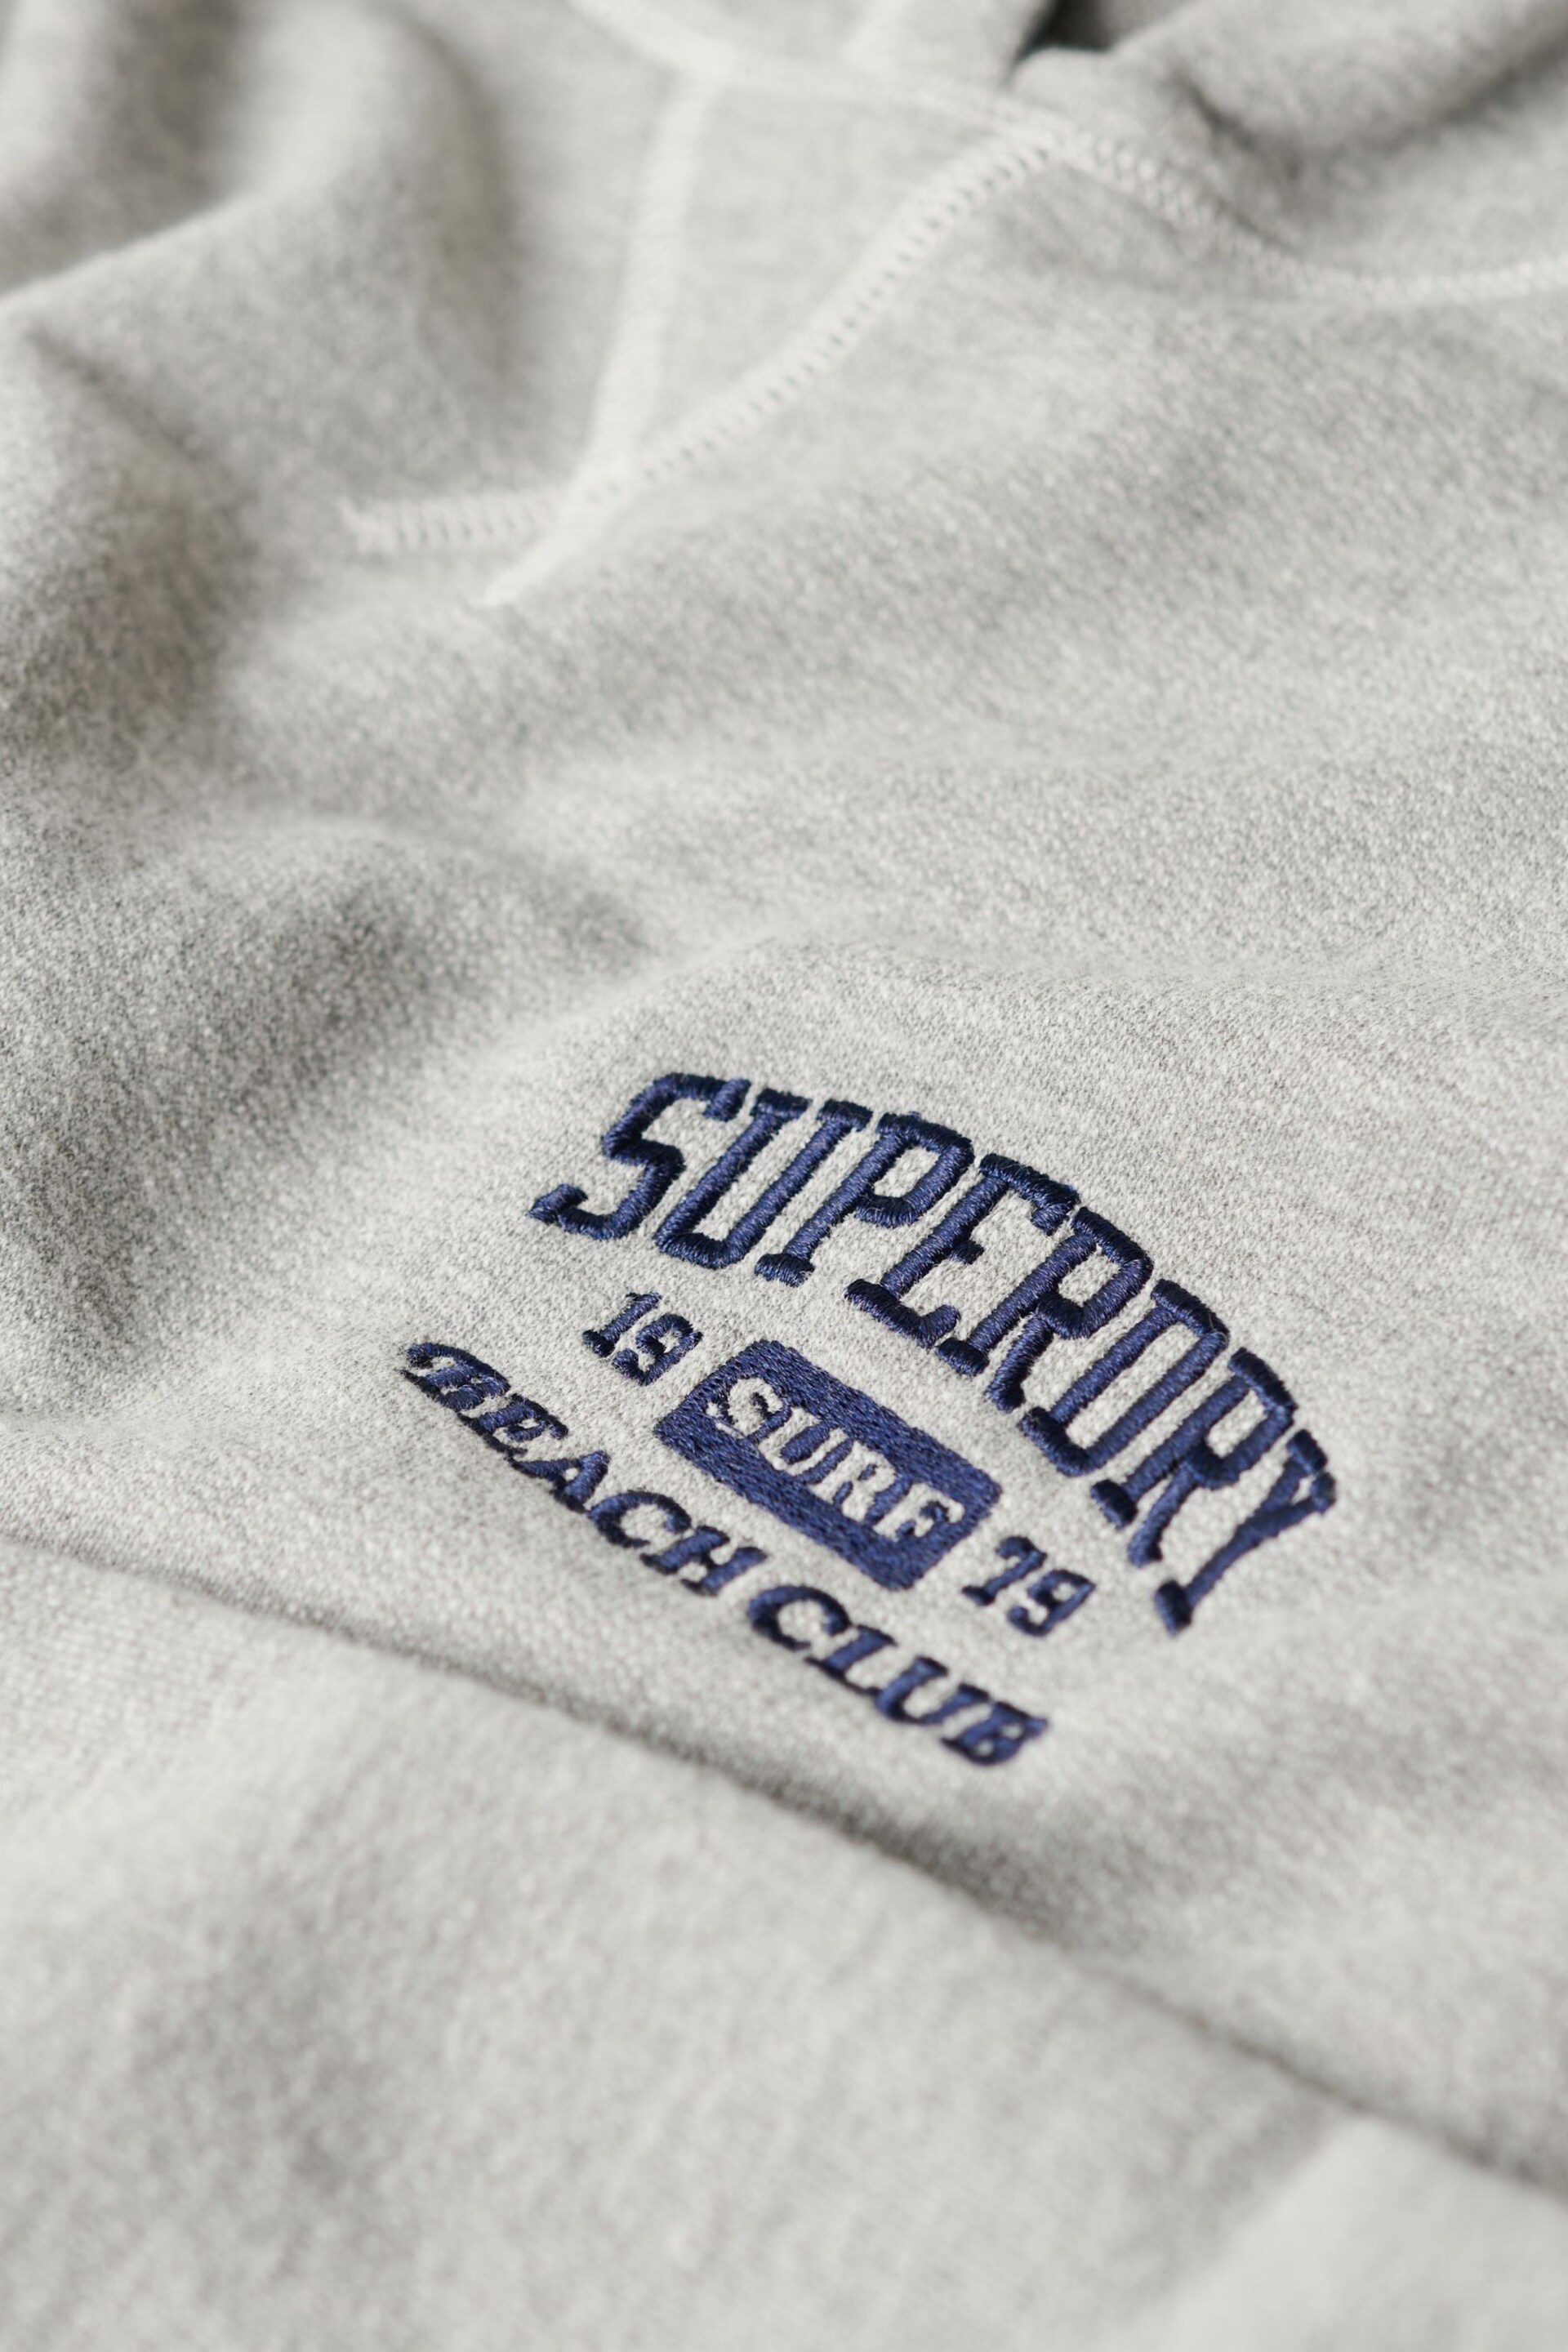 Superdry Grey Athletic Essential Hoodie - Image 6 of 6